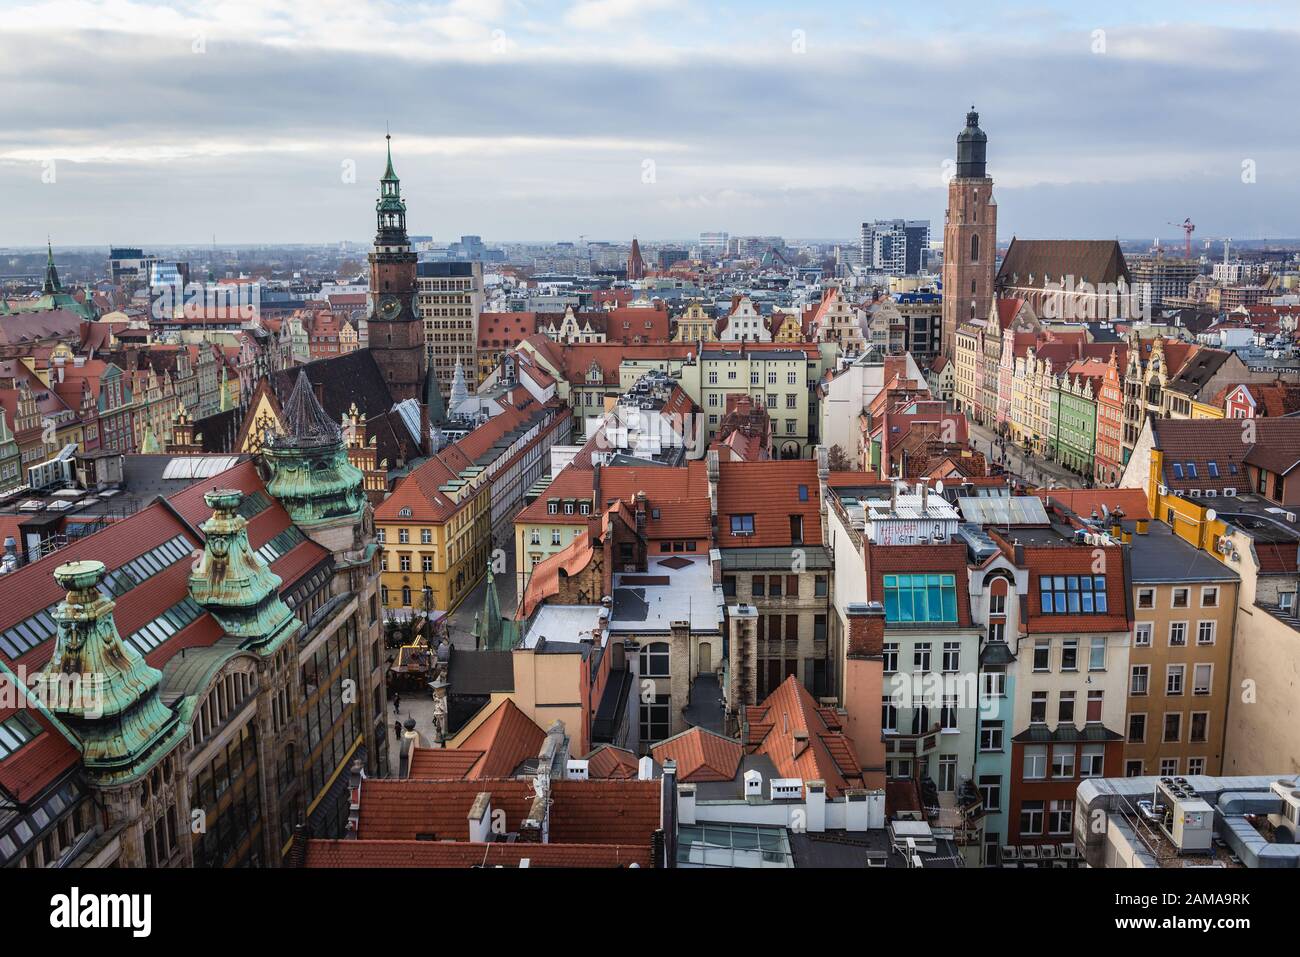 Altstadt von Wroclaw mit Altem Rathausbau und Basilika der heiligen Elisabeth von der sogenannten Hexenbrücke an der St.-Marien-Magdalena-Kirche, Polen, aus gesehen Stockfoto